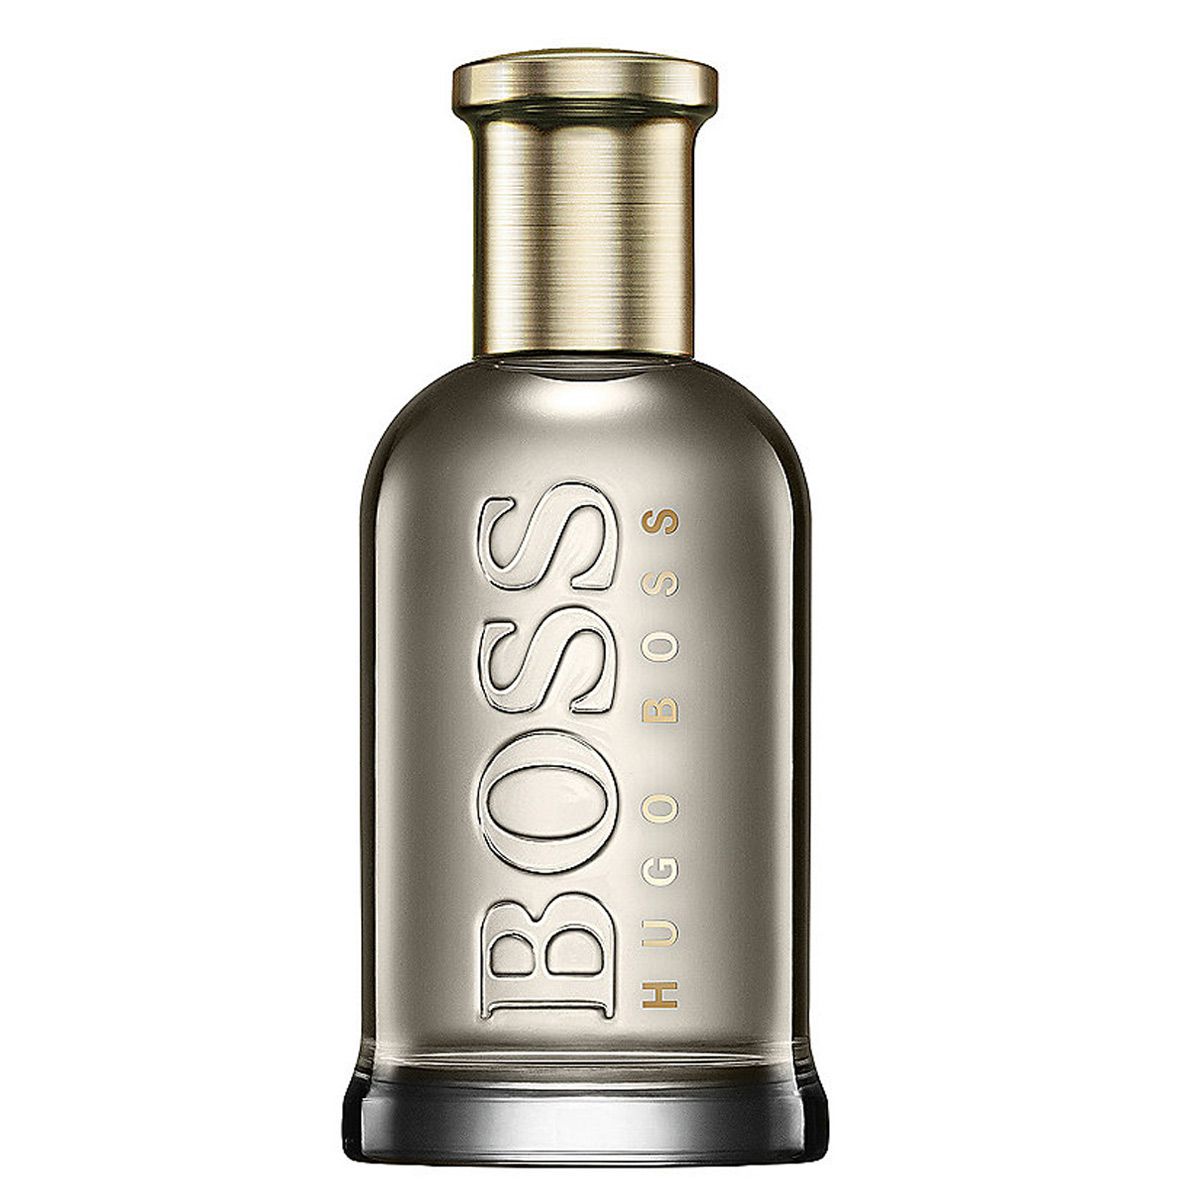  Hugo Boss Boss Bottled Eau de Parfum 